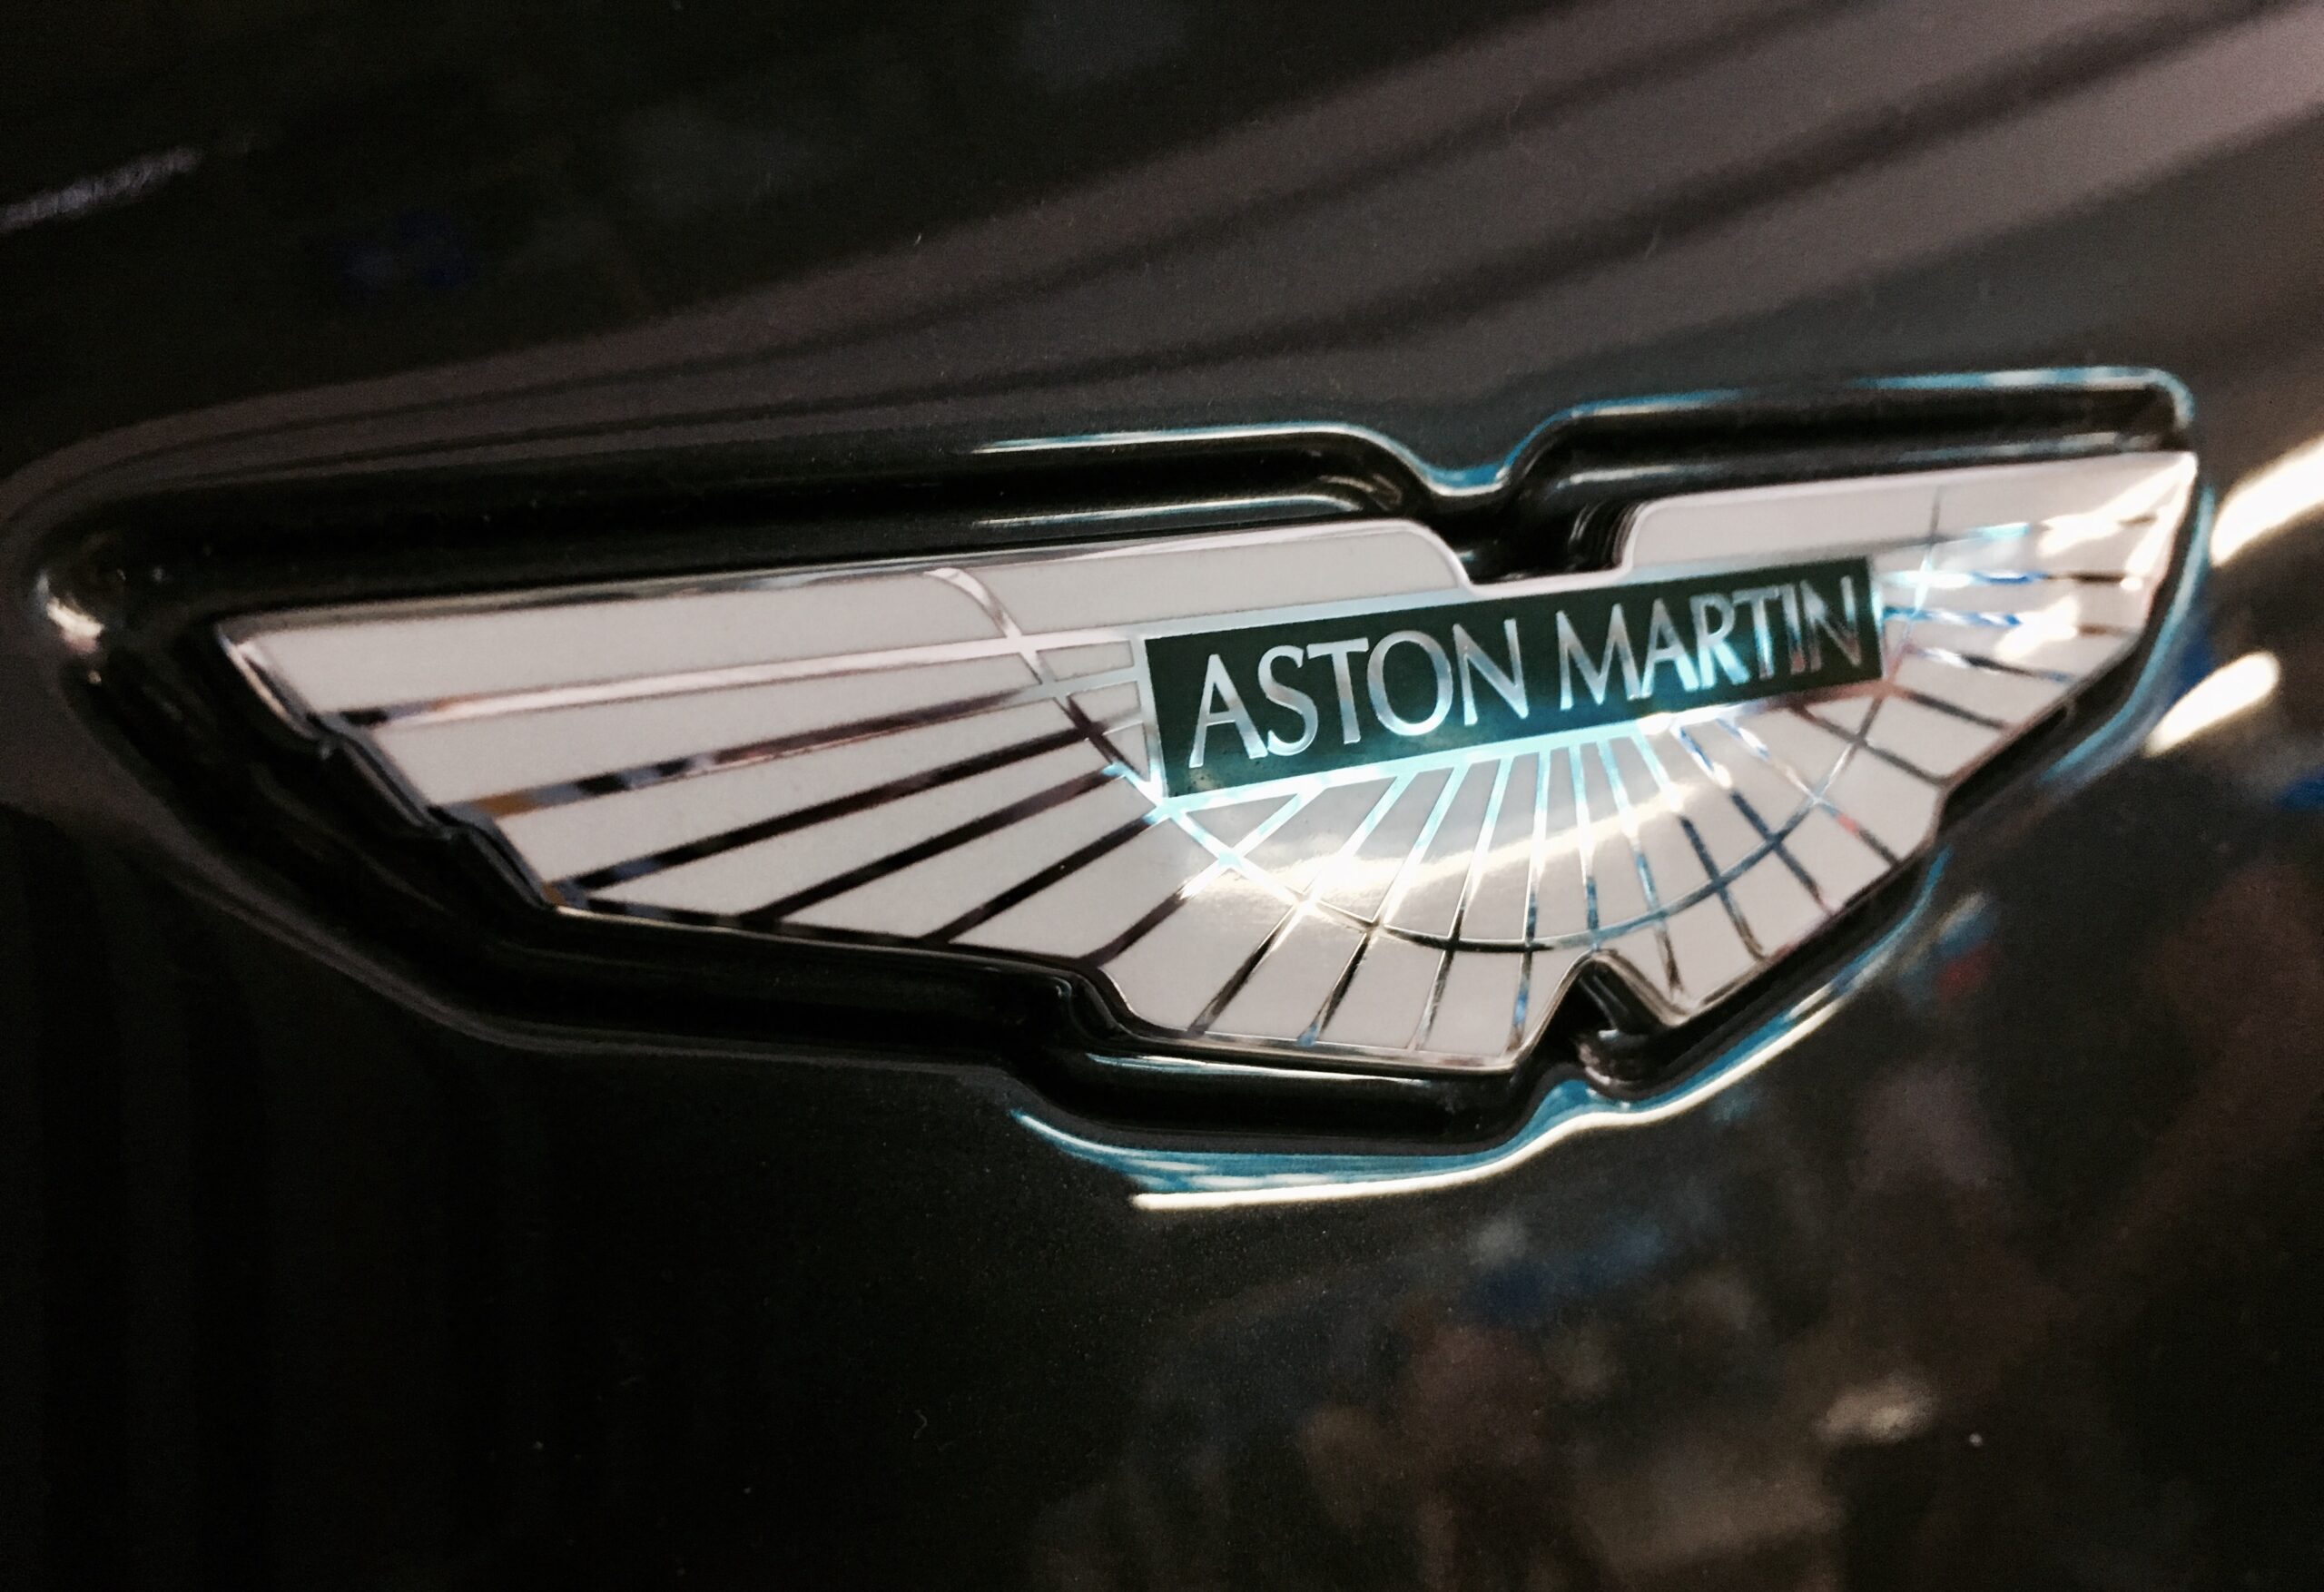 Aston Martin prevede un flusso di cassa positivo grazie alla nuova flotta di auto